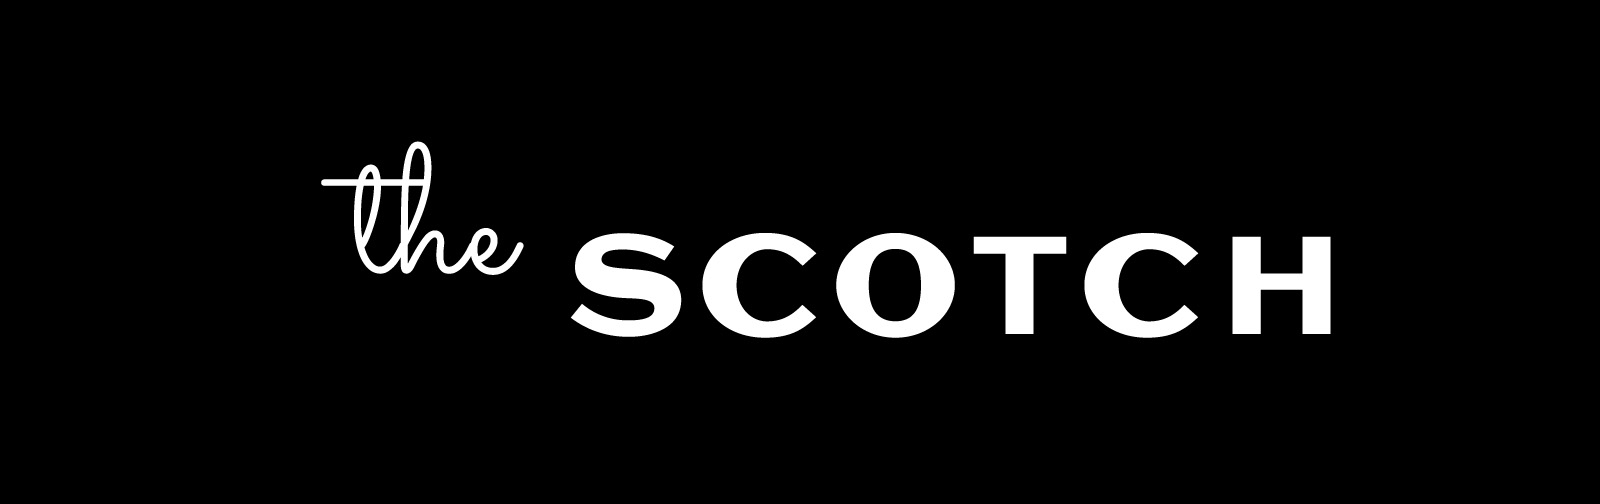 Brand Alternate logo for The Scotch